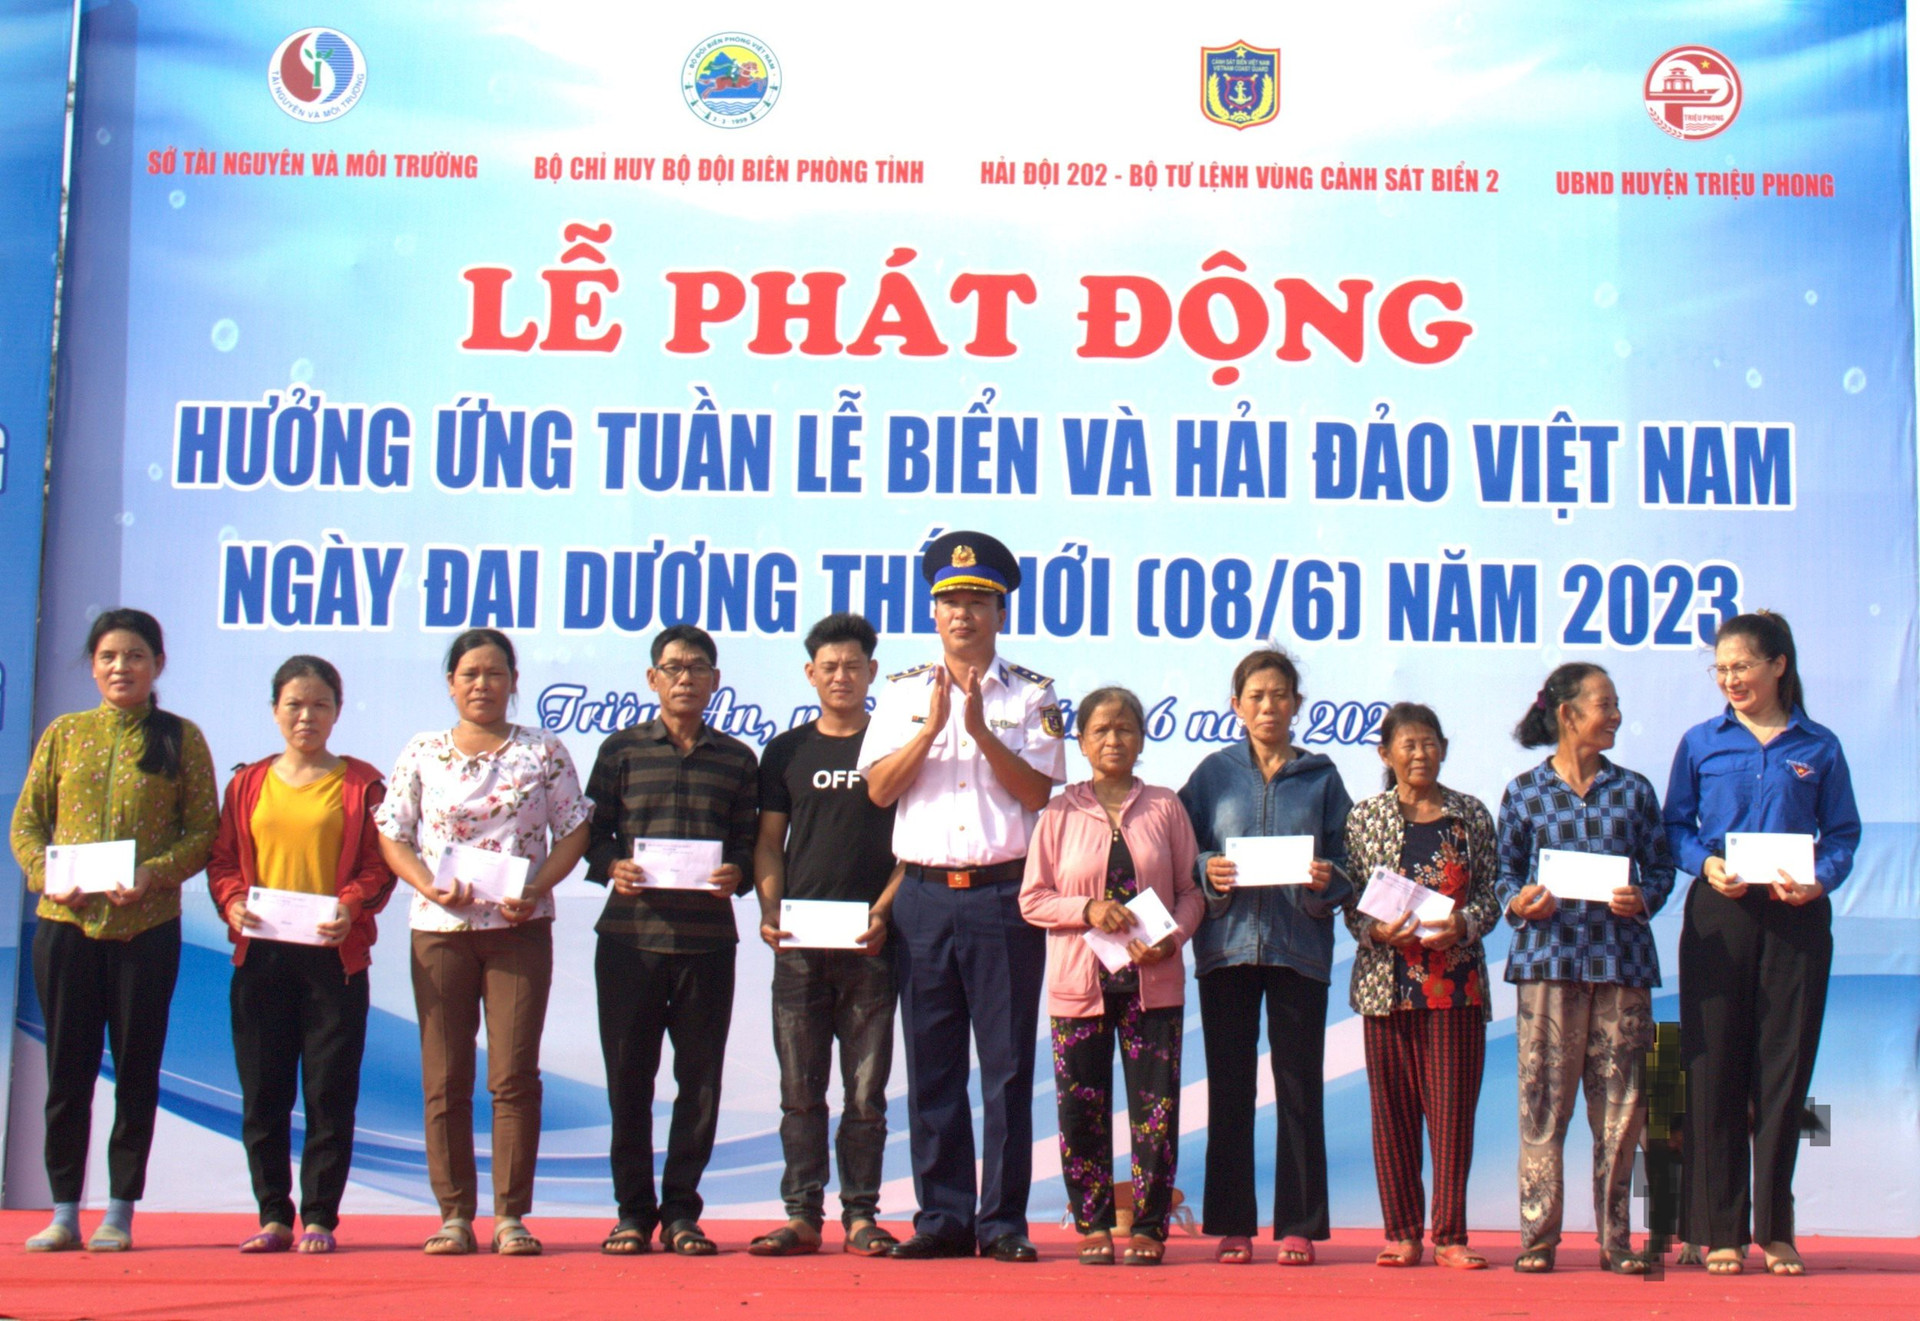 Quảng Trị: Phát động hưởng ứng Tuần lễ Biển và Hải đảo Việt Nam